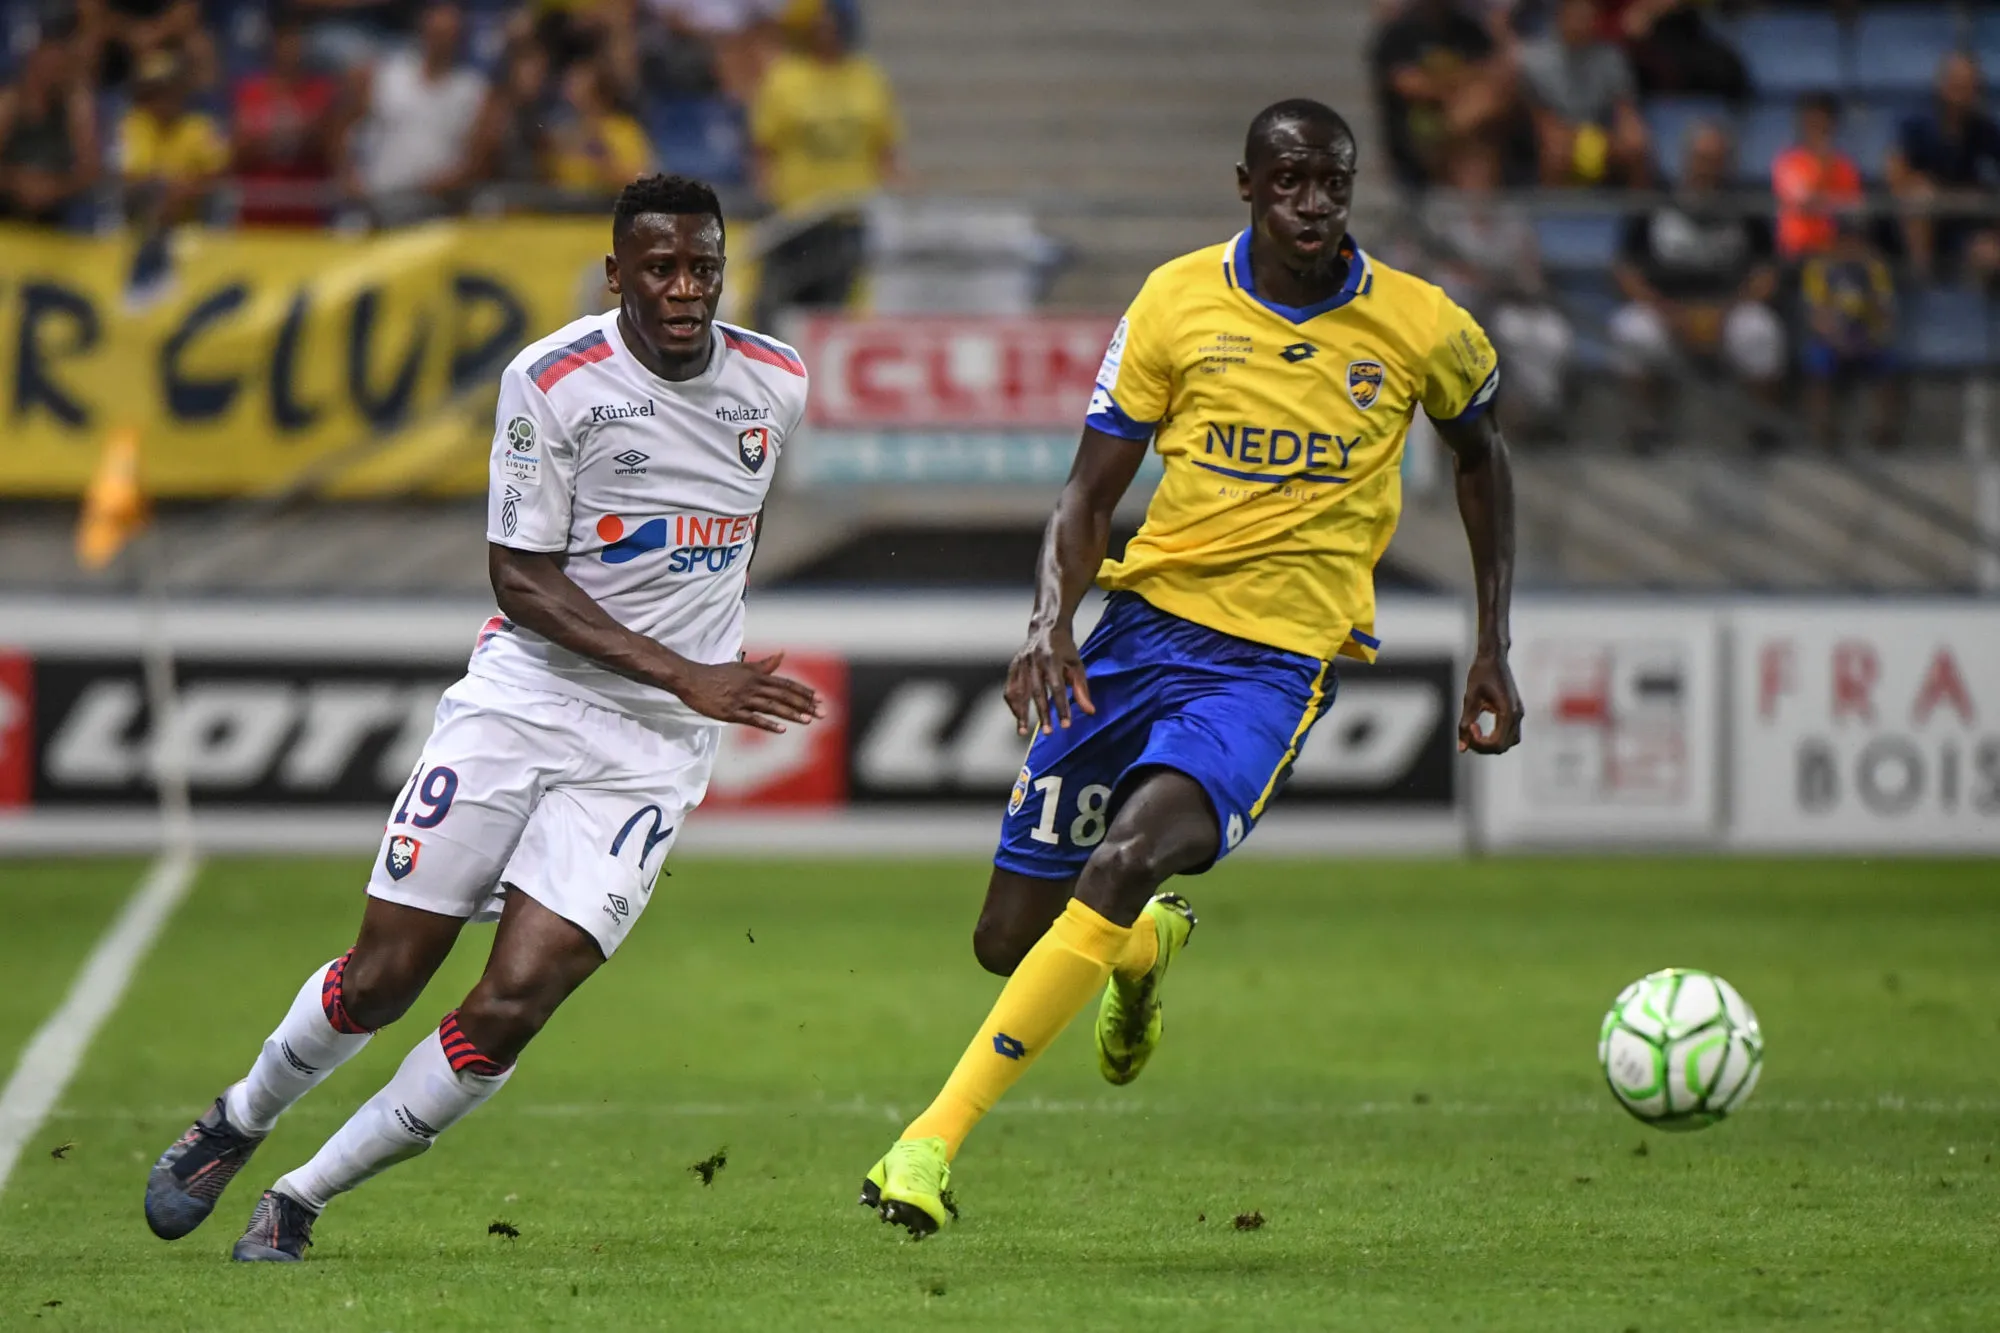 Pronostic Sochaux Chambly : Analyse, prono et cotes du match de Ligue 2